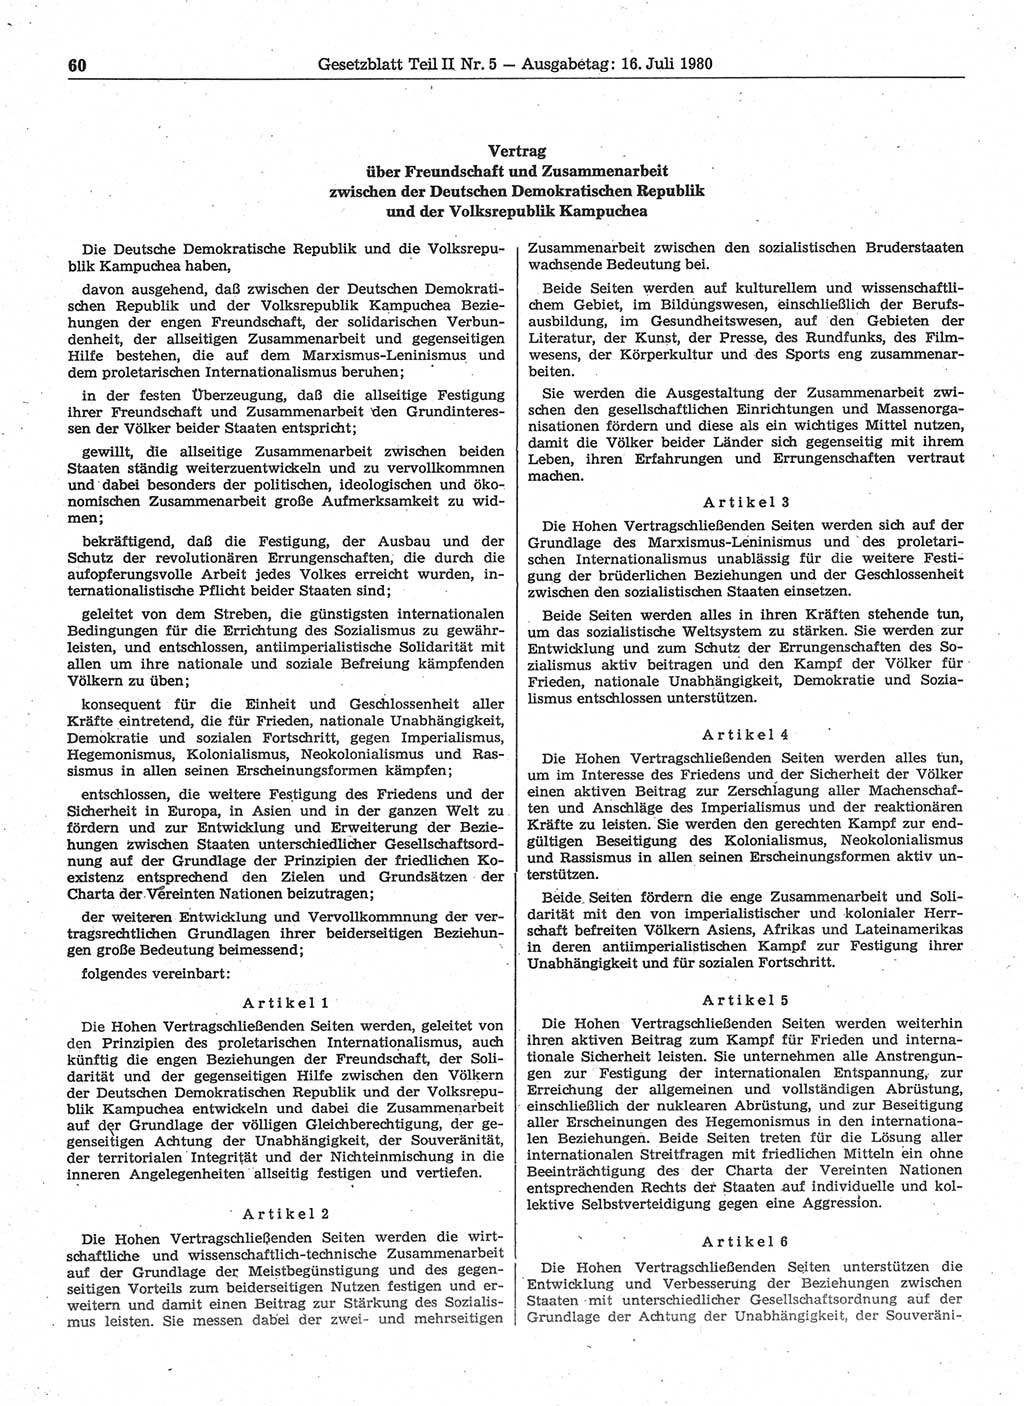 Gesetzblatt (GBl.) der Deutschen Demokratischen Republik (DDR) Teil ⅠⅠ 1980, Seite 60 (GBl. DDR ⅠⅠ 1980, S. 60)